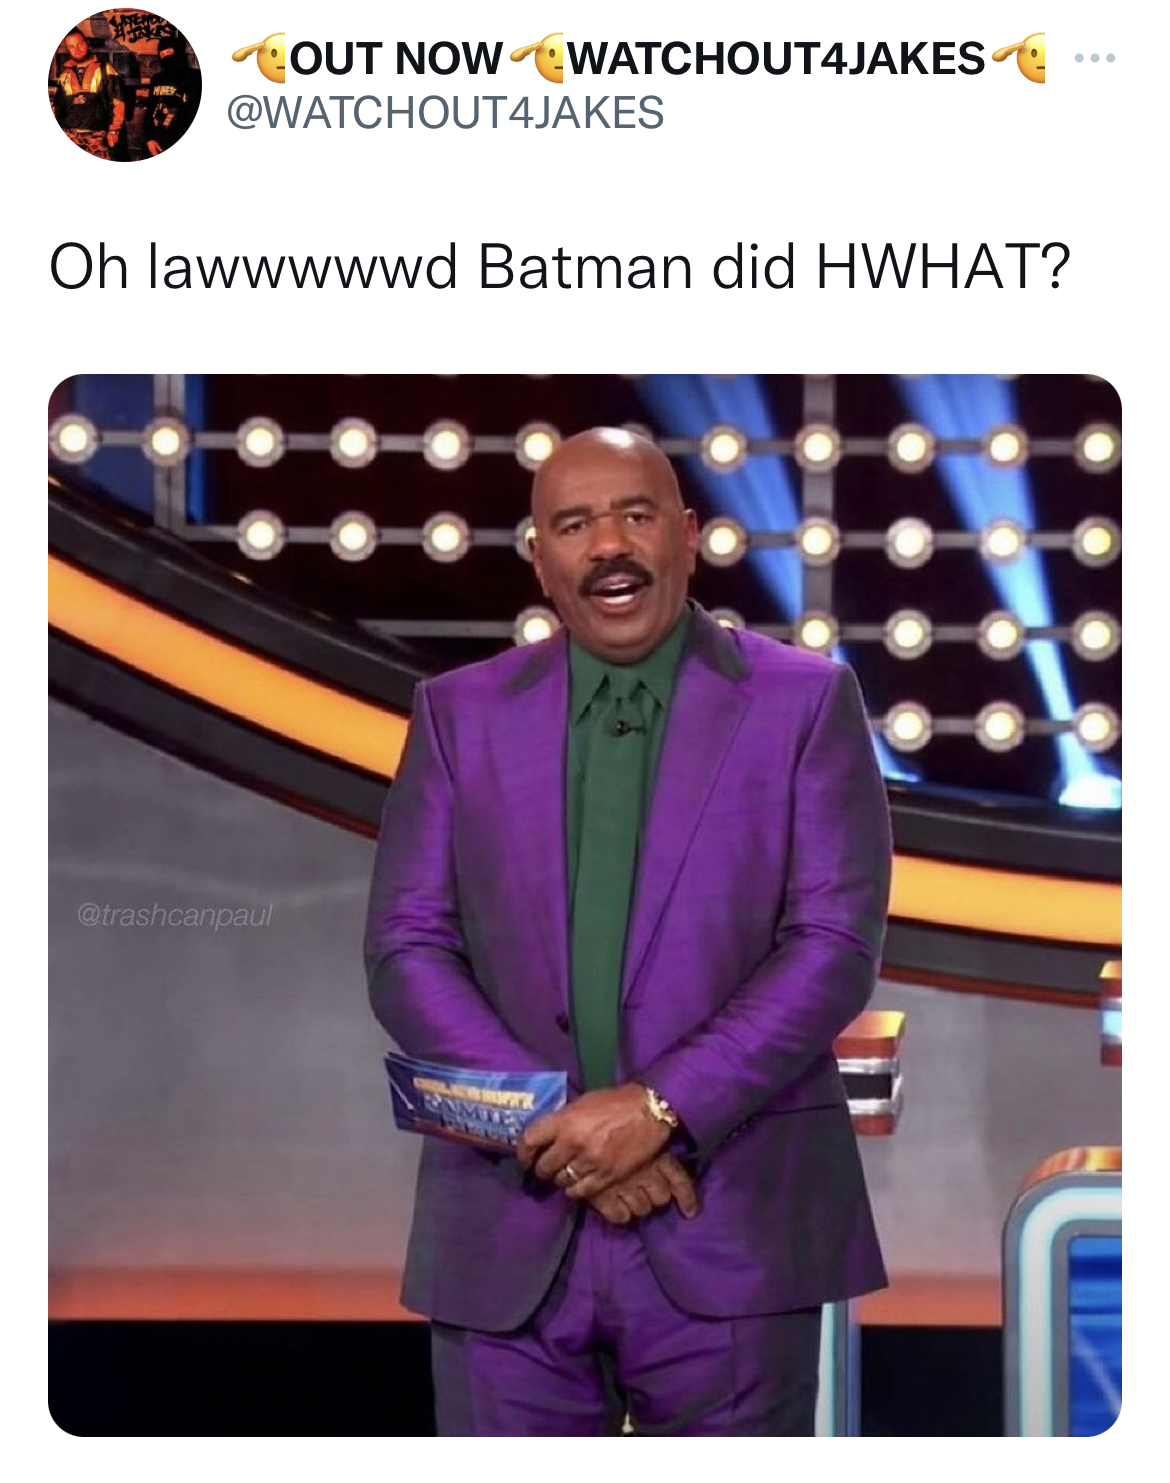 steve harvey joker - Out Now WATCHOUT4JAKES www Oh lawwwwwd Batman did Hwhat?